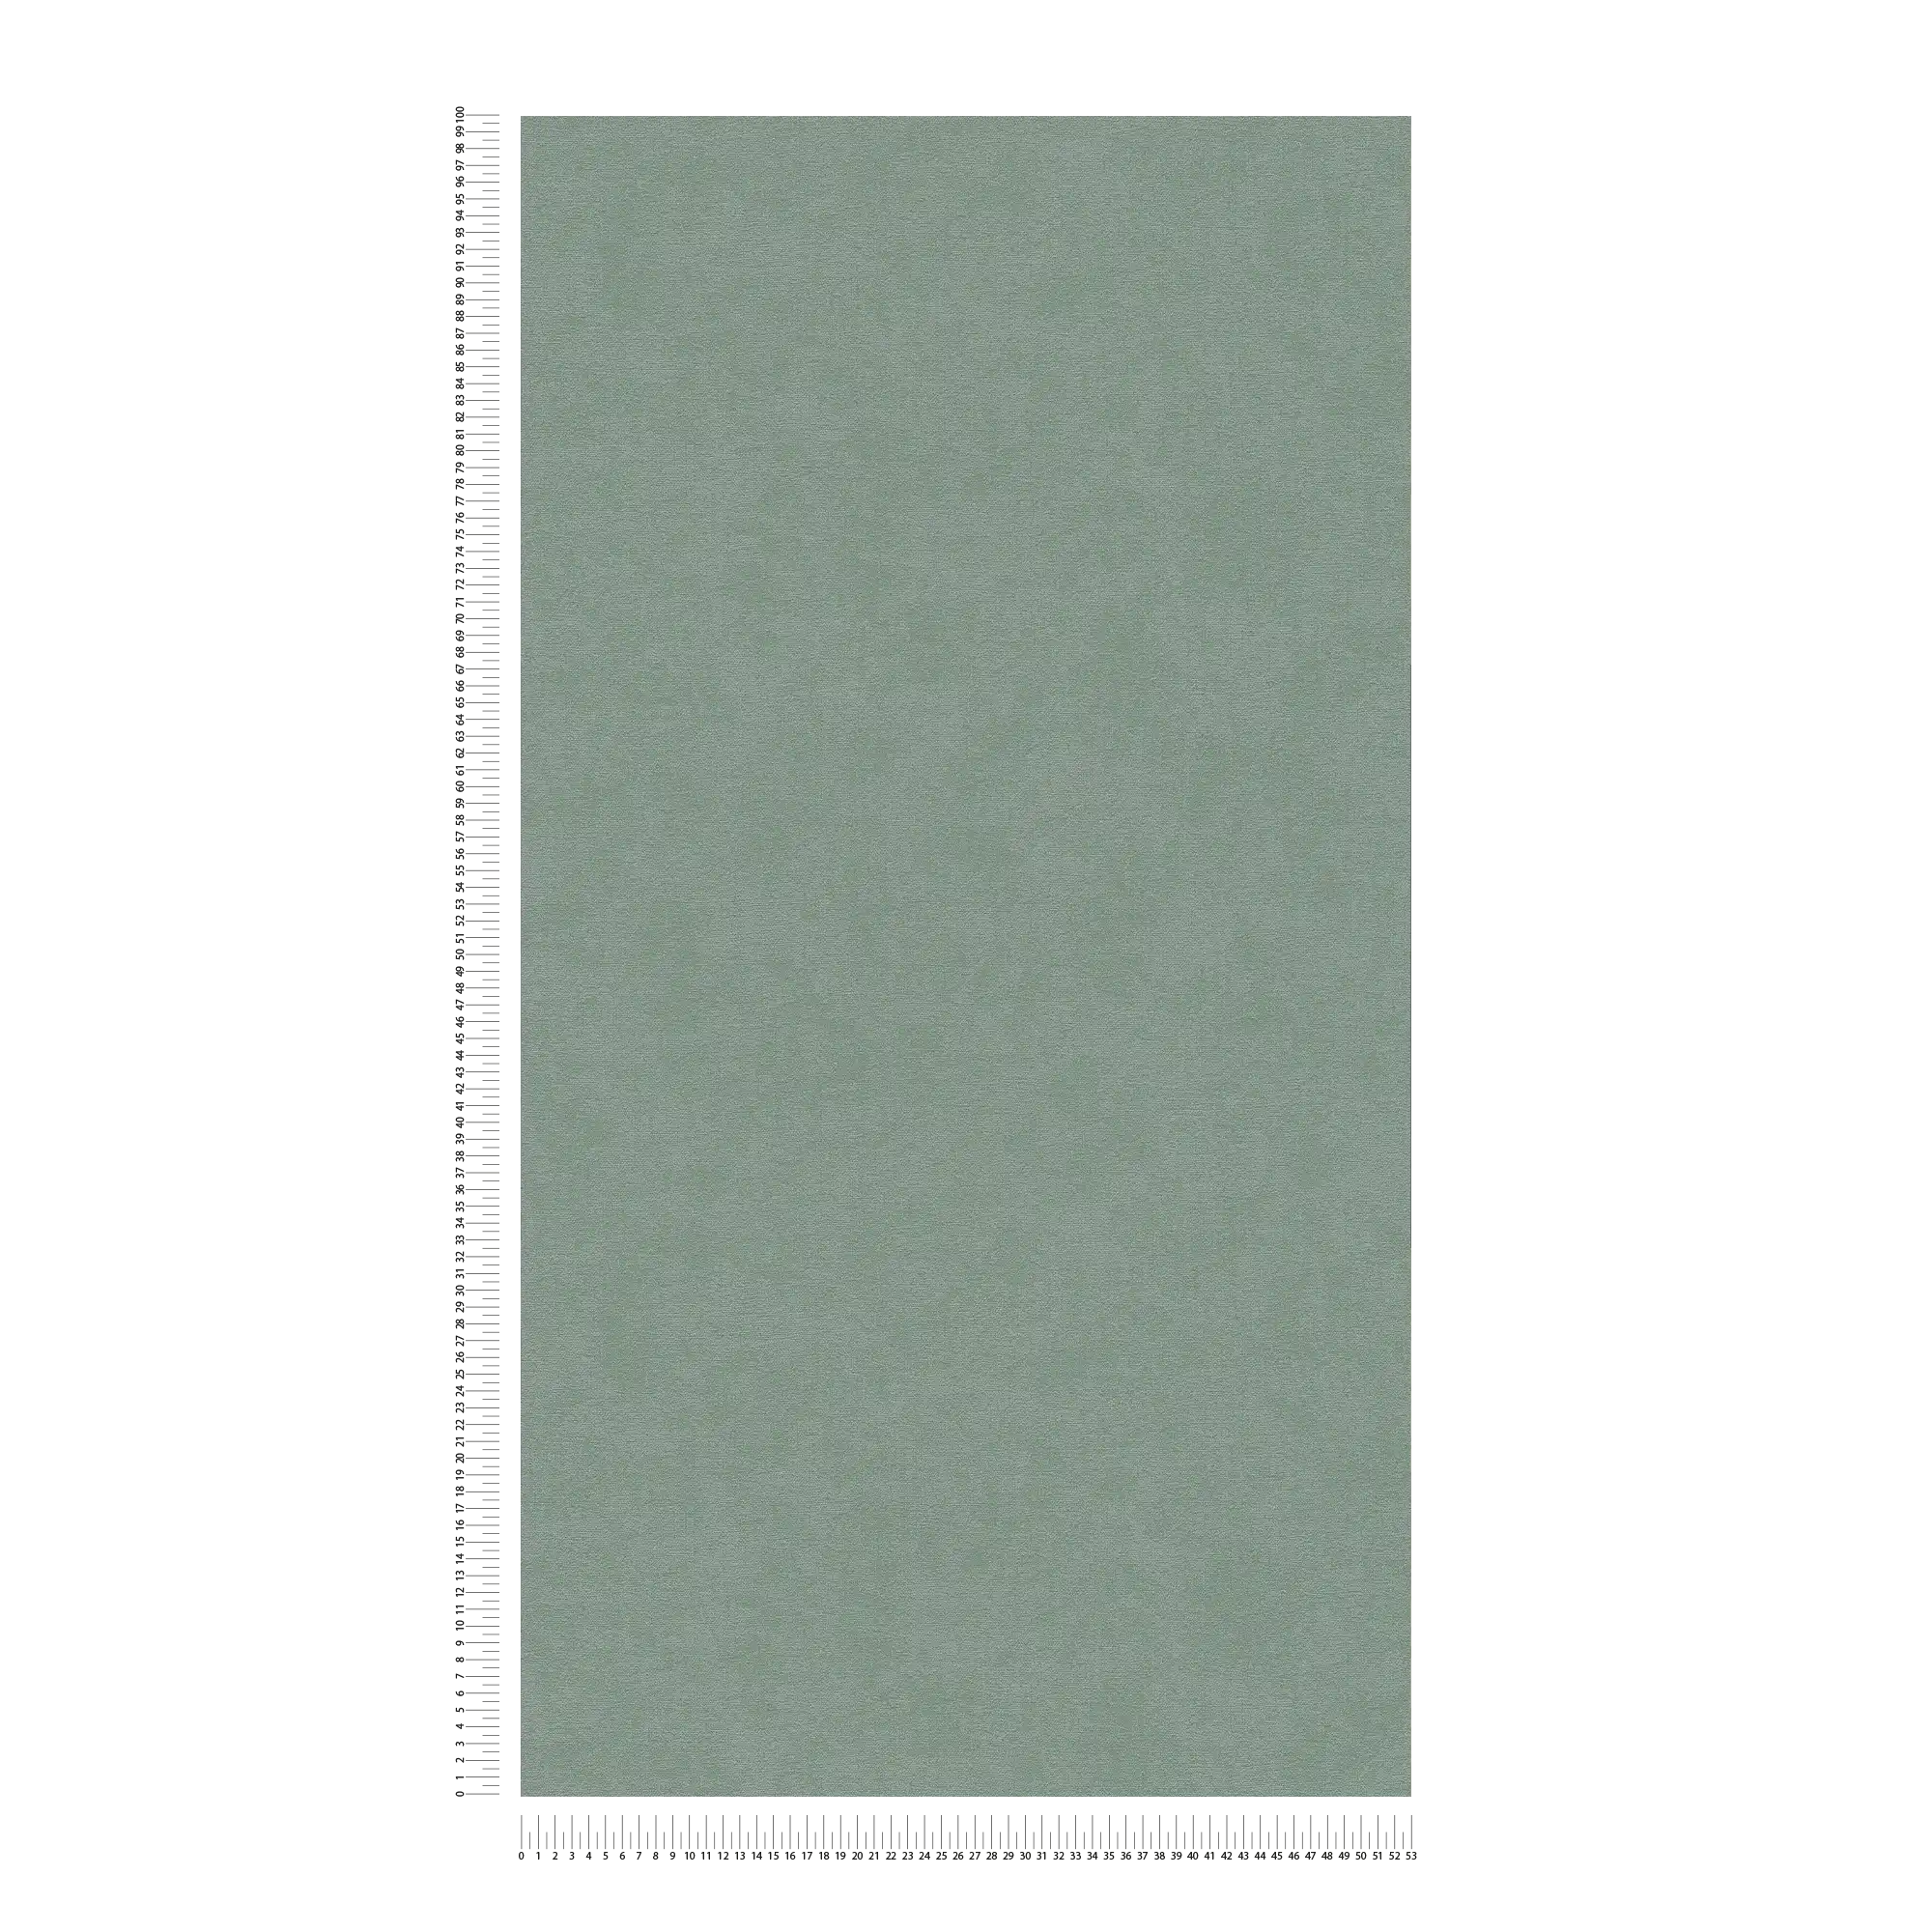             Carta da parati monocolore in tessuto non tessuto con texture morbida - Verde
        